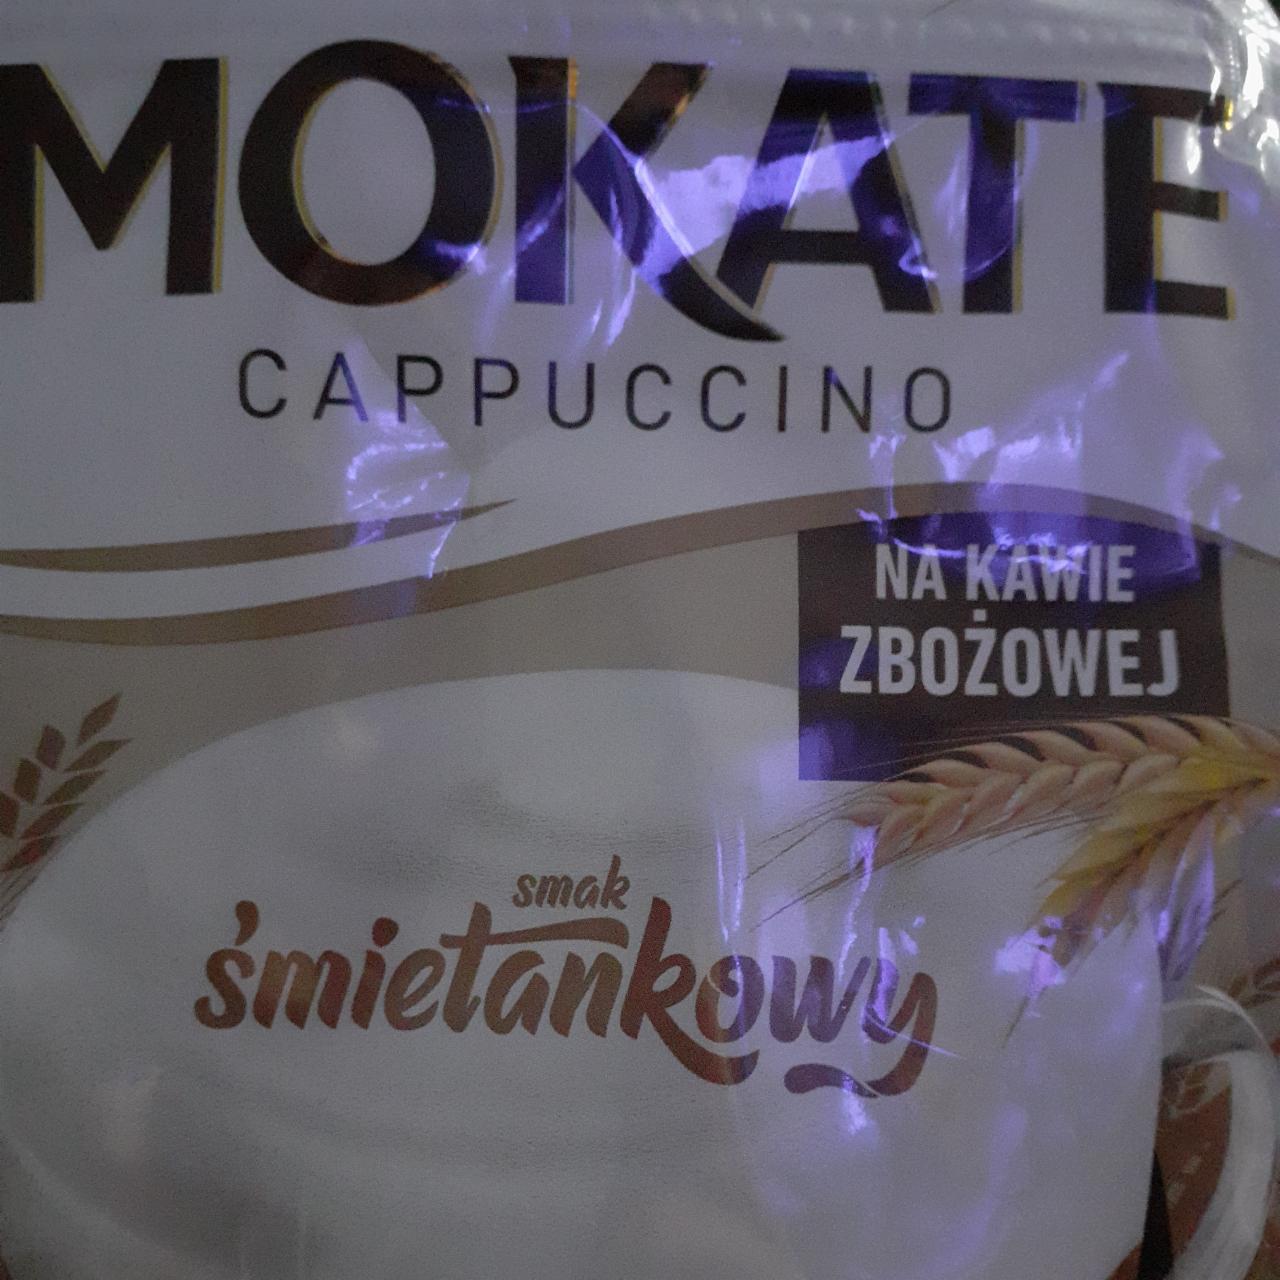 Zdjęcia - Cappuccino na kawie zbożowej smak śmietankowy Mokate